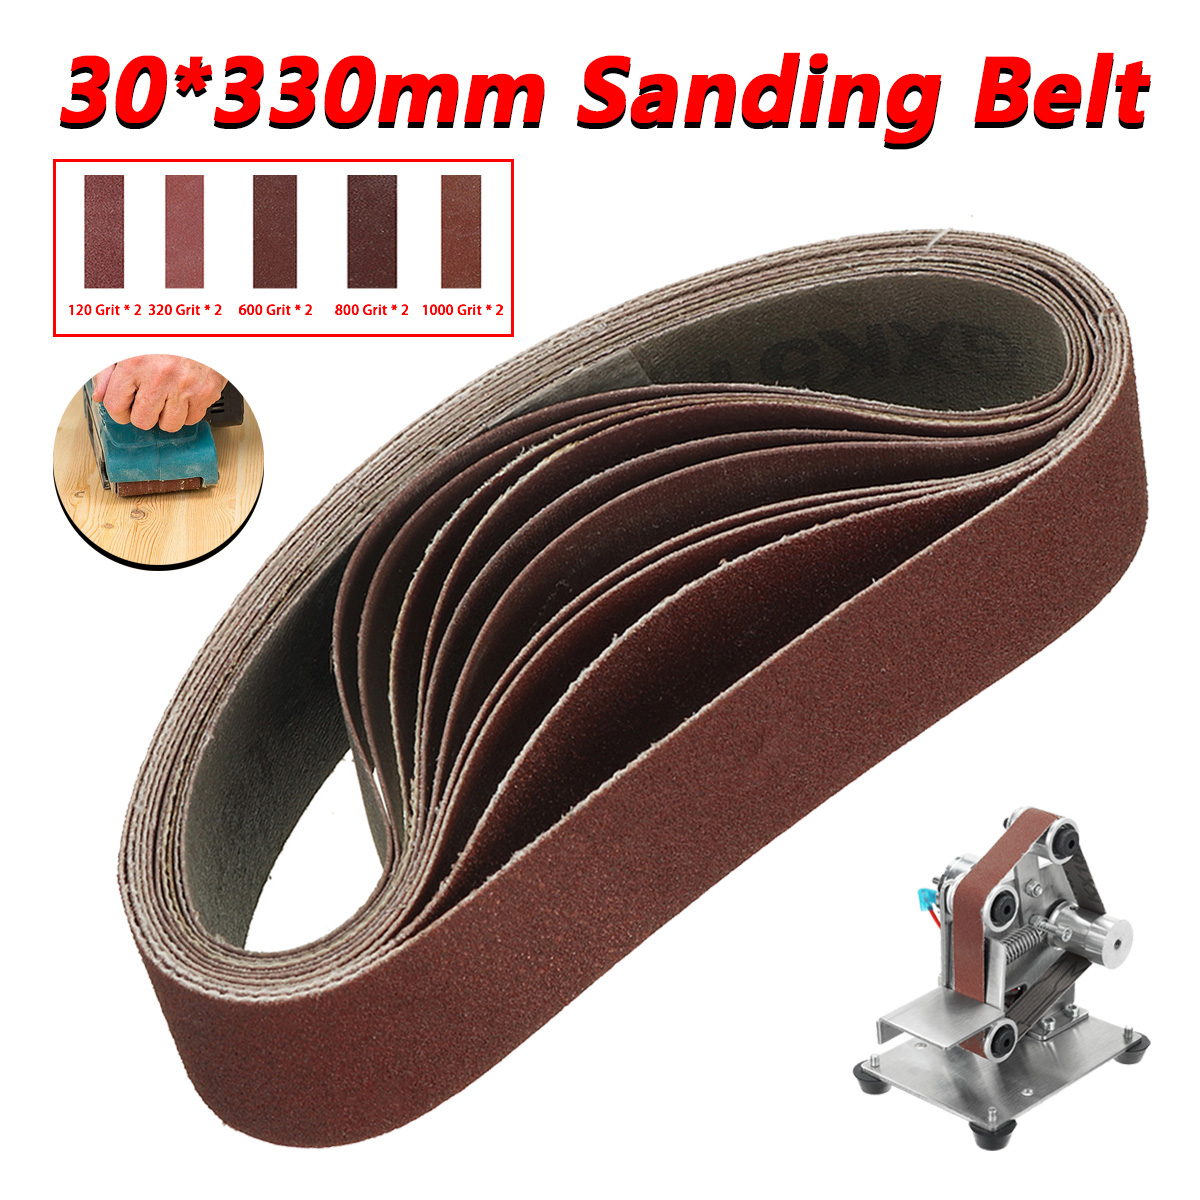 330x30mm-10Pcs-120-320-600-800-1000-Grits-Belt-Sander-Sanding-Belts-for-Angle-Grinder-1940876-1